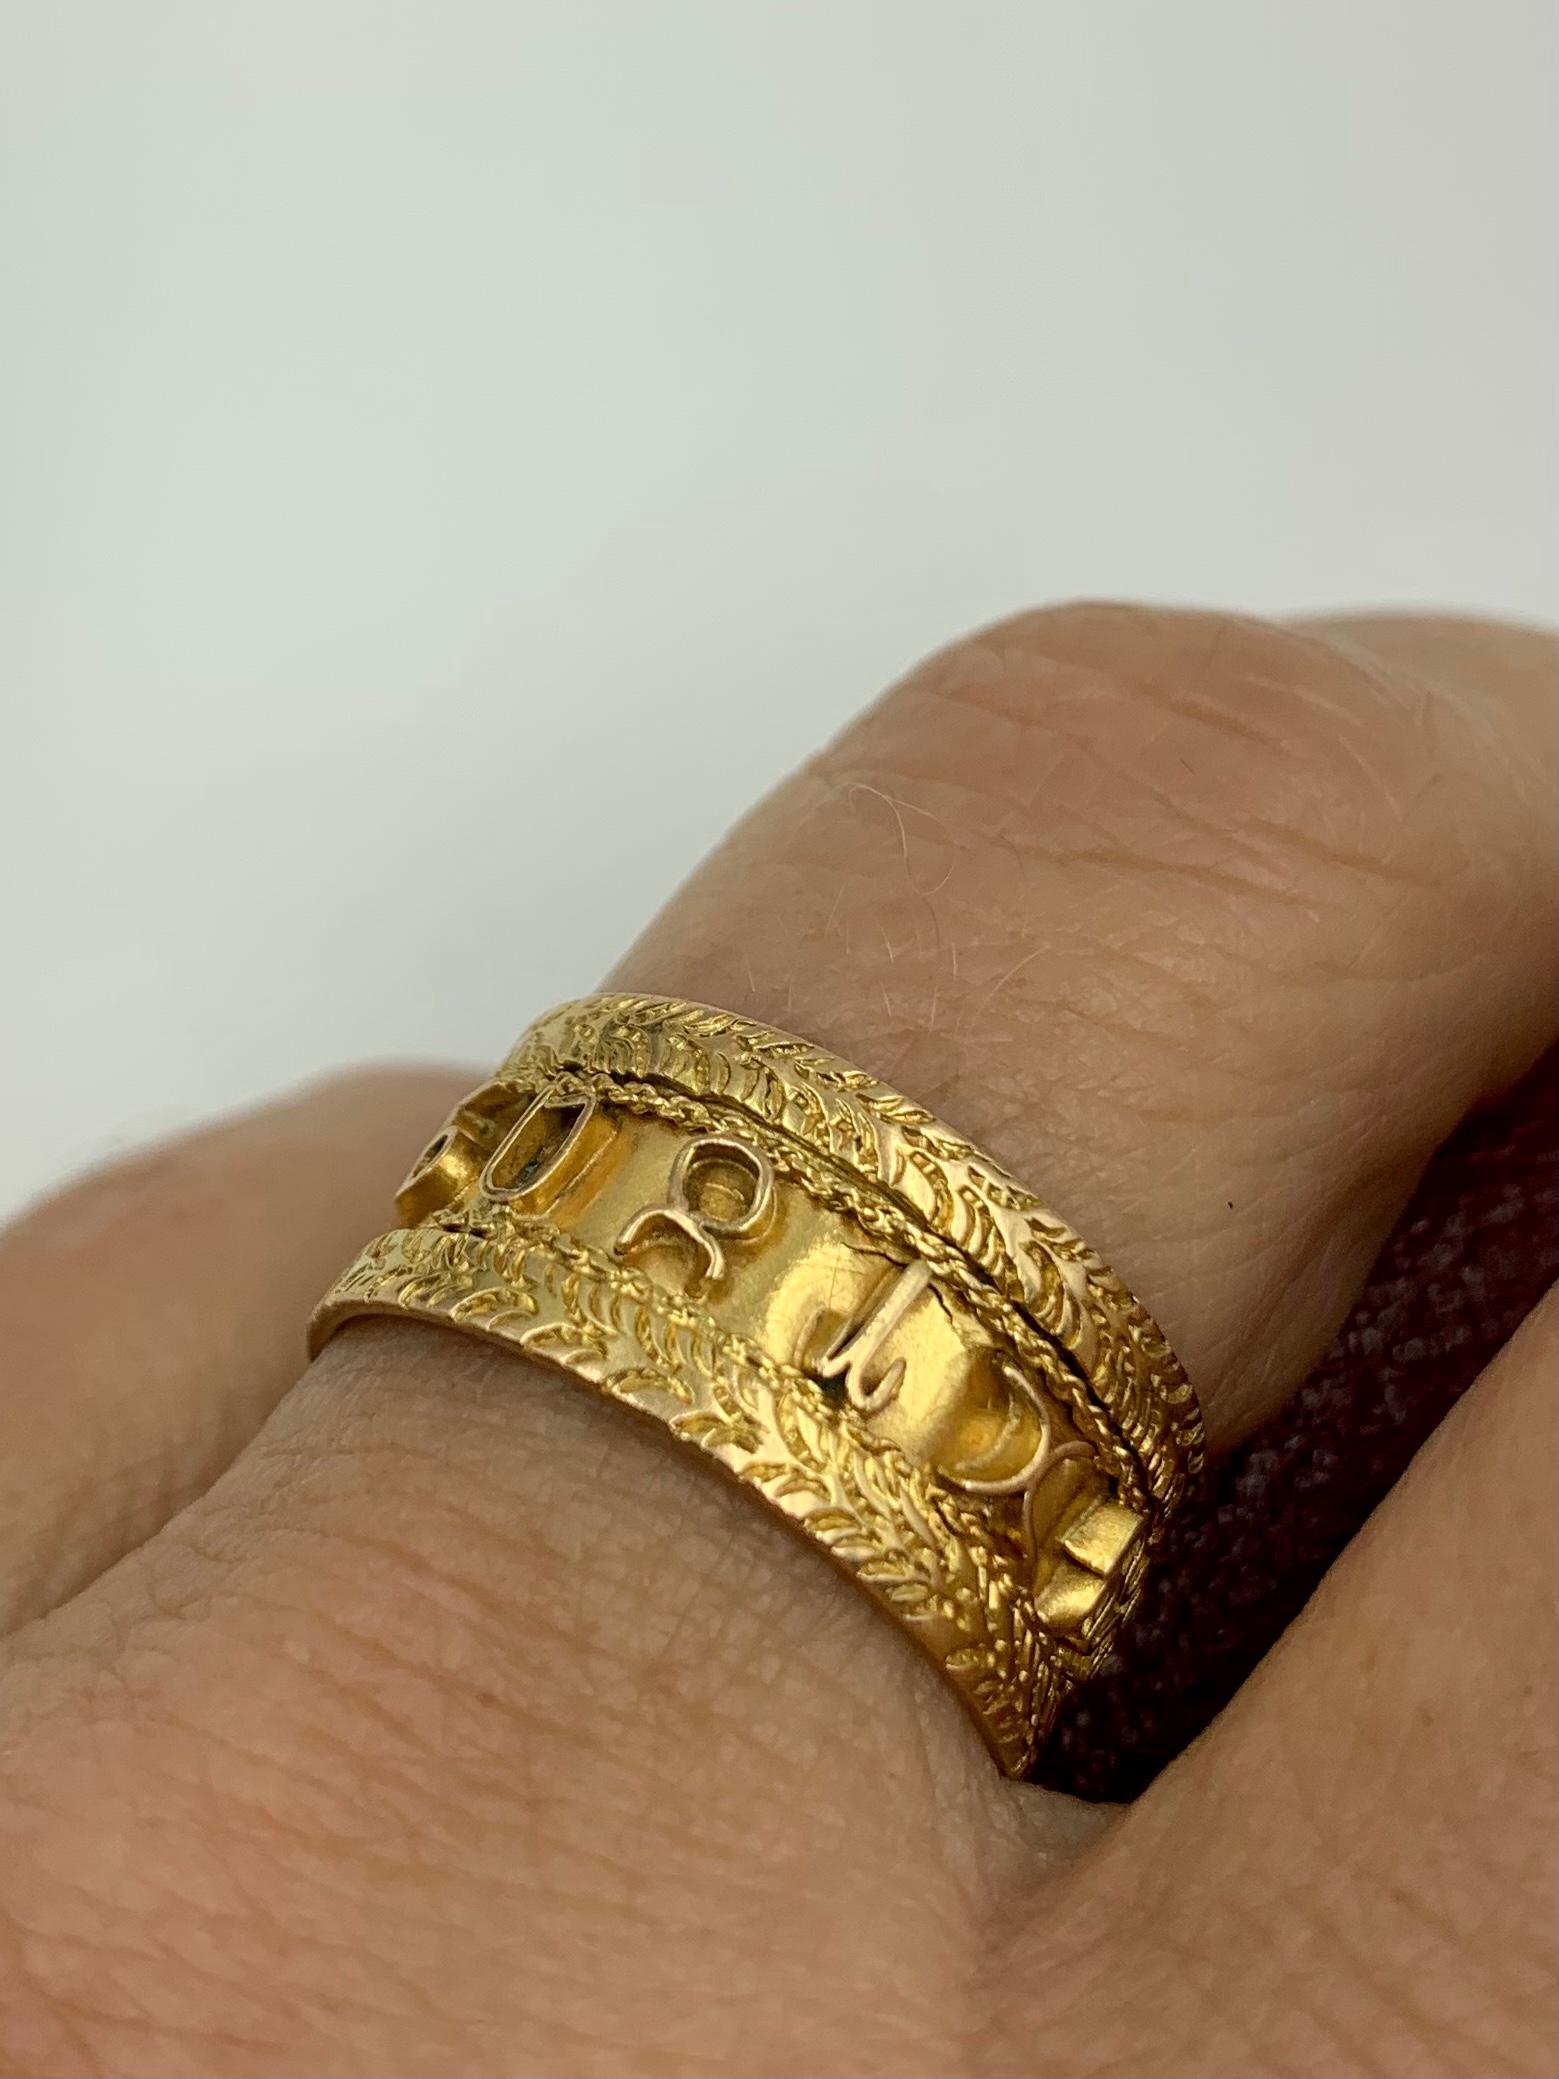 Auffallend breiter Ring aus 14-karätigem Gelbgold mit den Symbolen der Zodiacs am Umfang, umrahmt von attraktiven Blattranken. Astrologische Juwelen haben eine universelle Anziehungskraft - die meisten sind als ein einzelnes Zeichen des Zodiacs